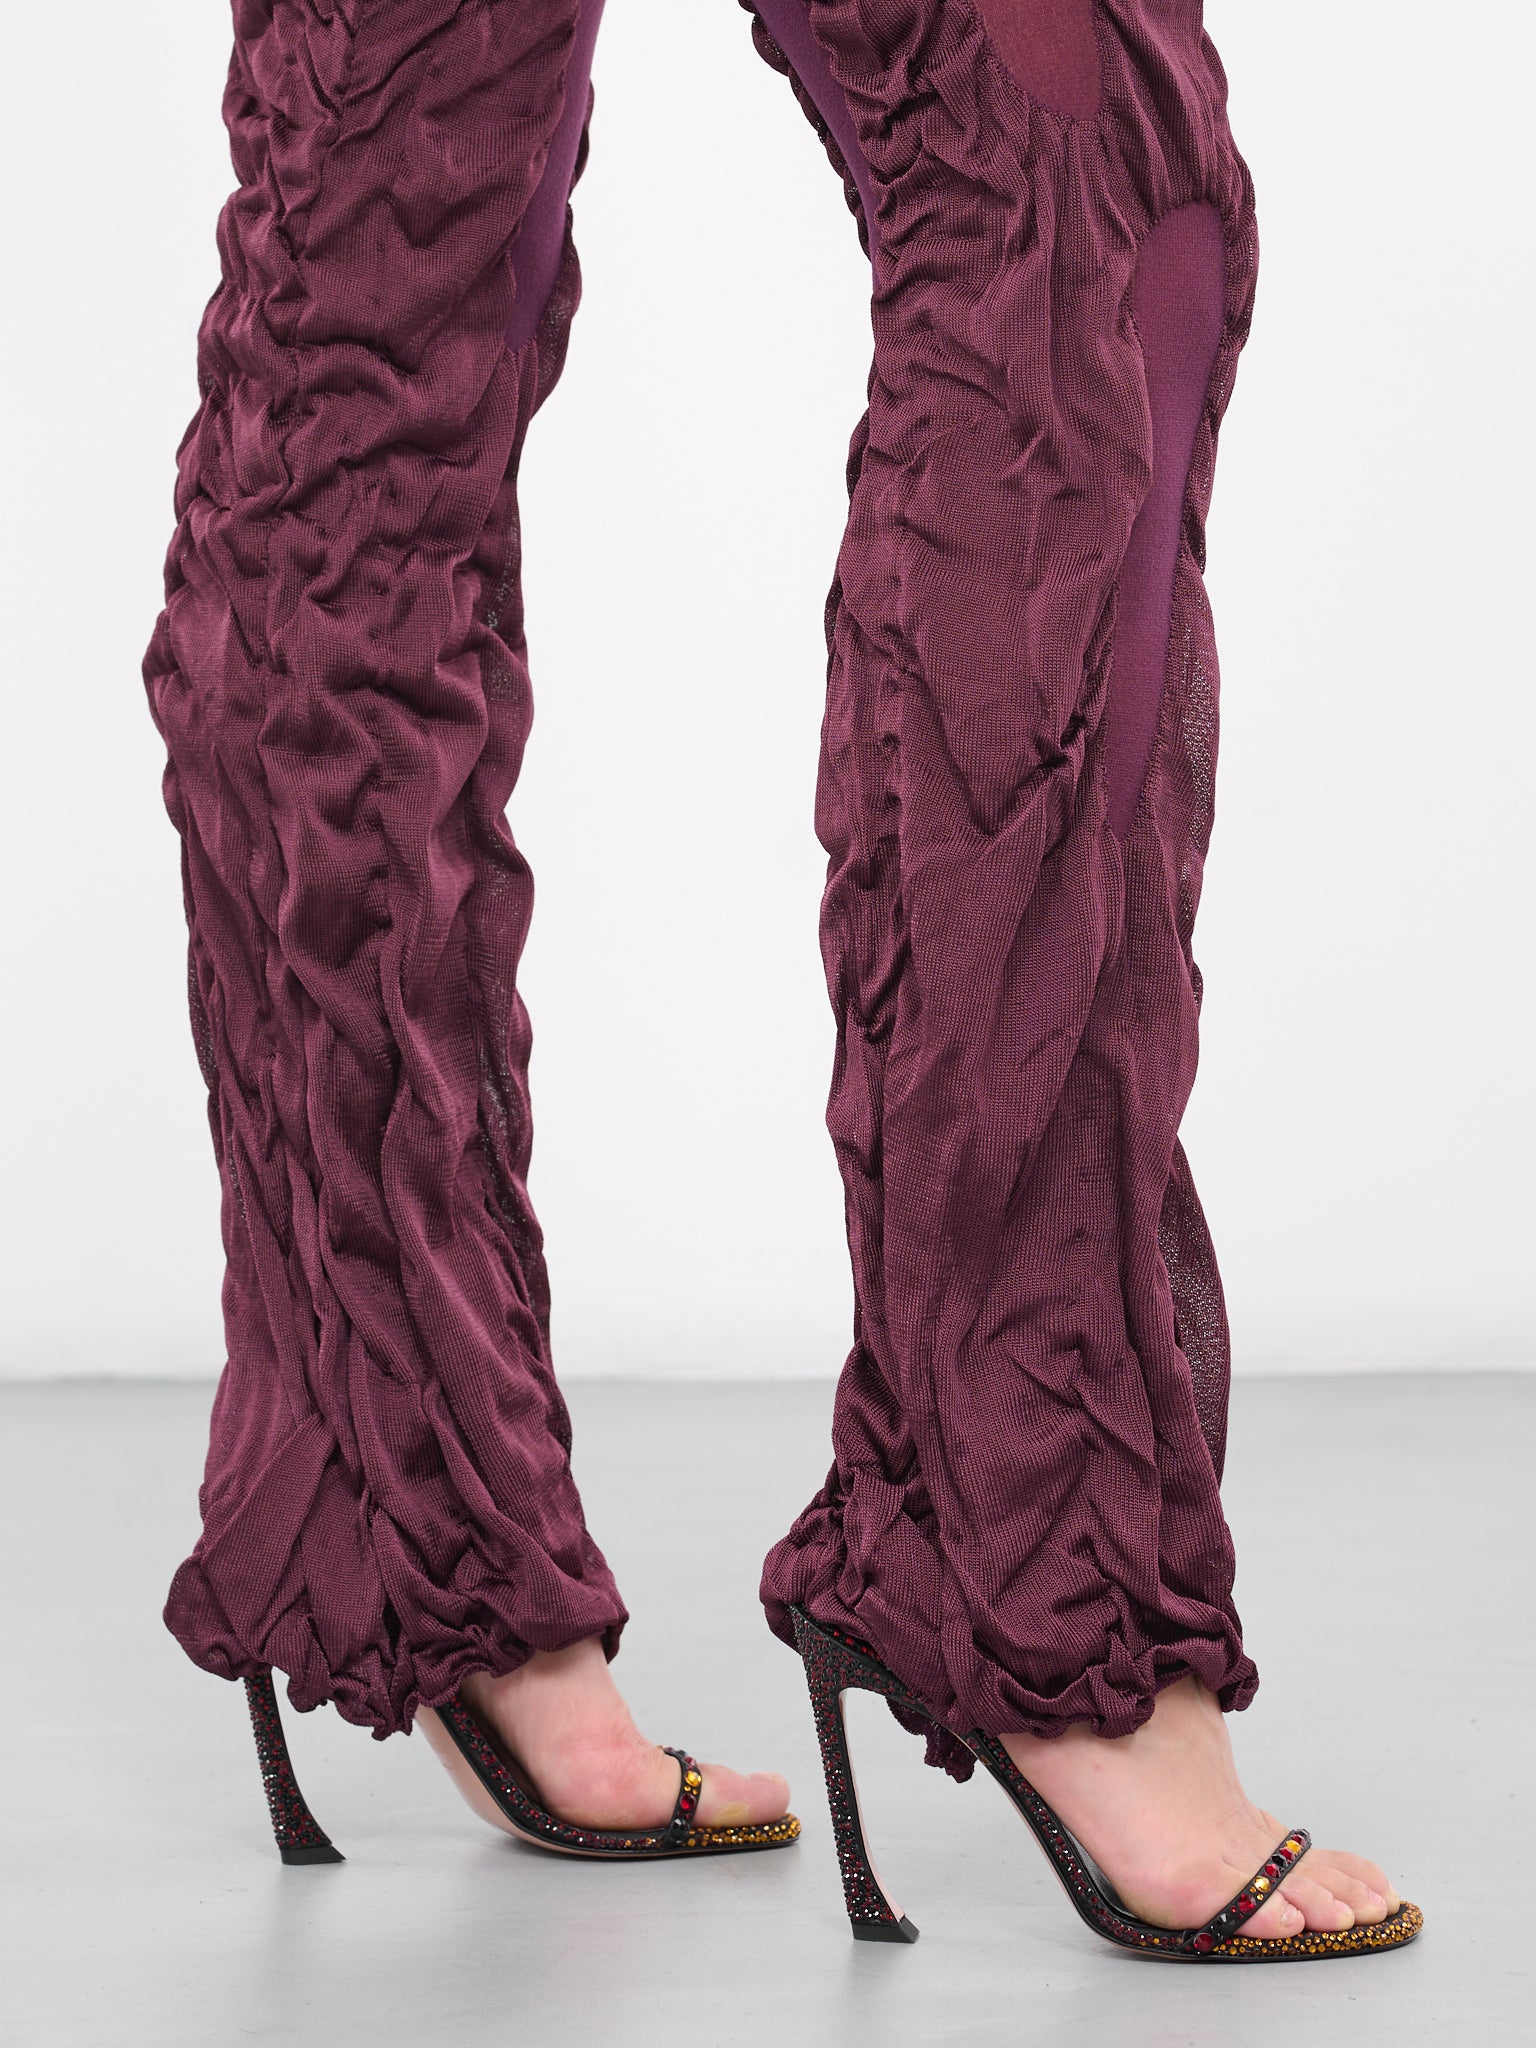 Wet Knit Trousers (WETLOOK-KNITTED-MAROON-PURPLE_